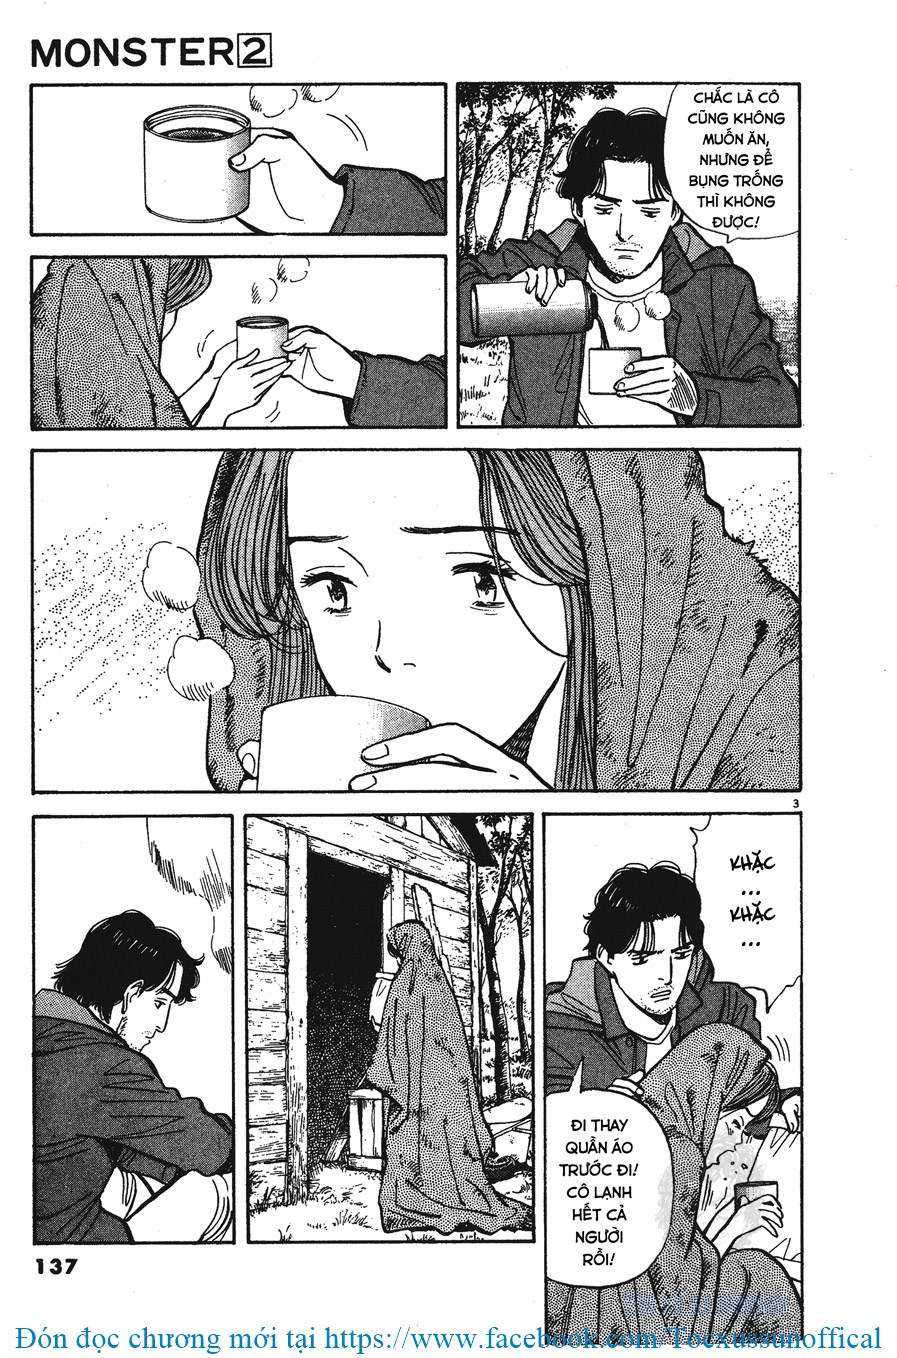 [18+]Monster - Naoki Urasawa [Bản Đẹp][Update Chương 16] - Trang 2